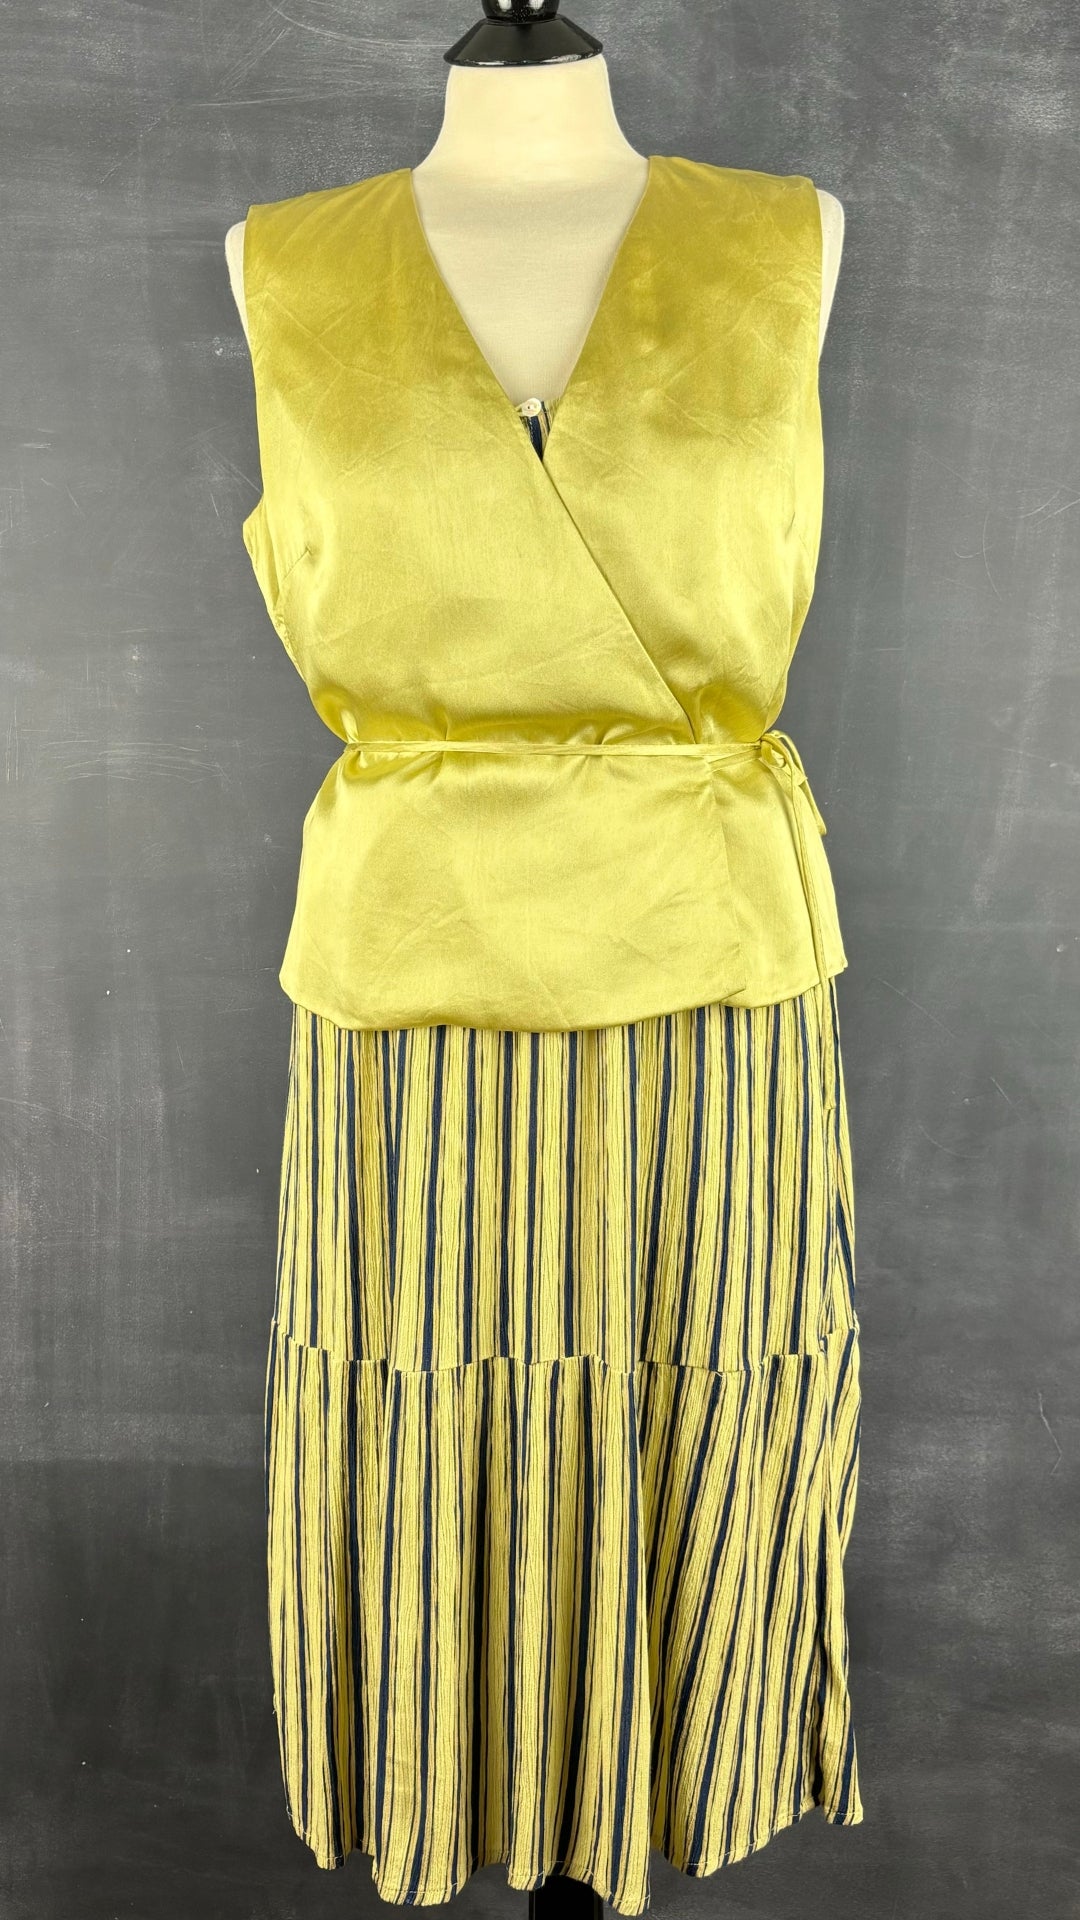 Robe jaune à rayures Ichi, taille m/l. Vue de l'agencement avec la camisole en soie Lafayette 148 New York.